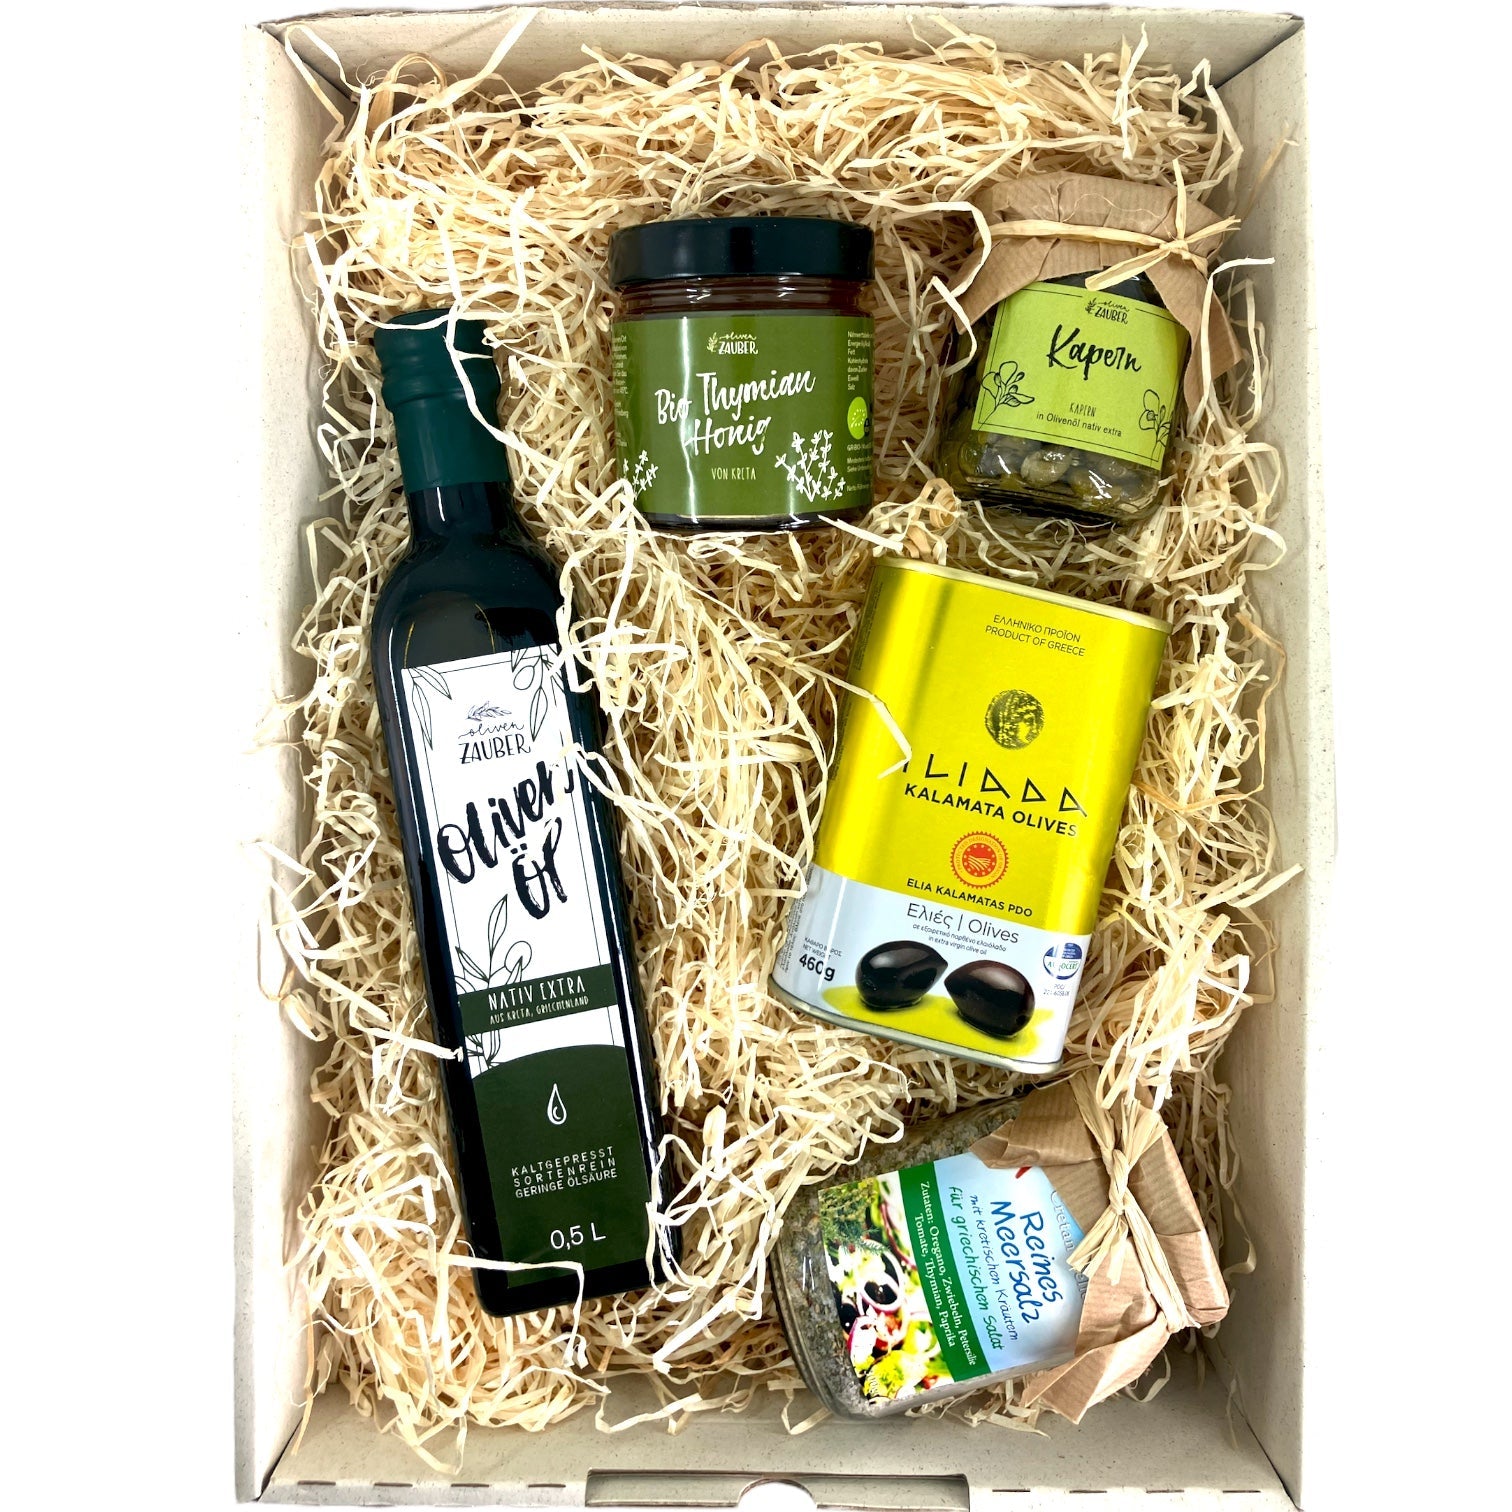 OlivenZauber Geschenkset “Griechischer Salat” - OlivenZauber - Olivenöl neu erleben